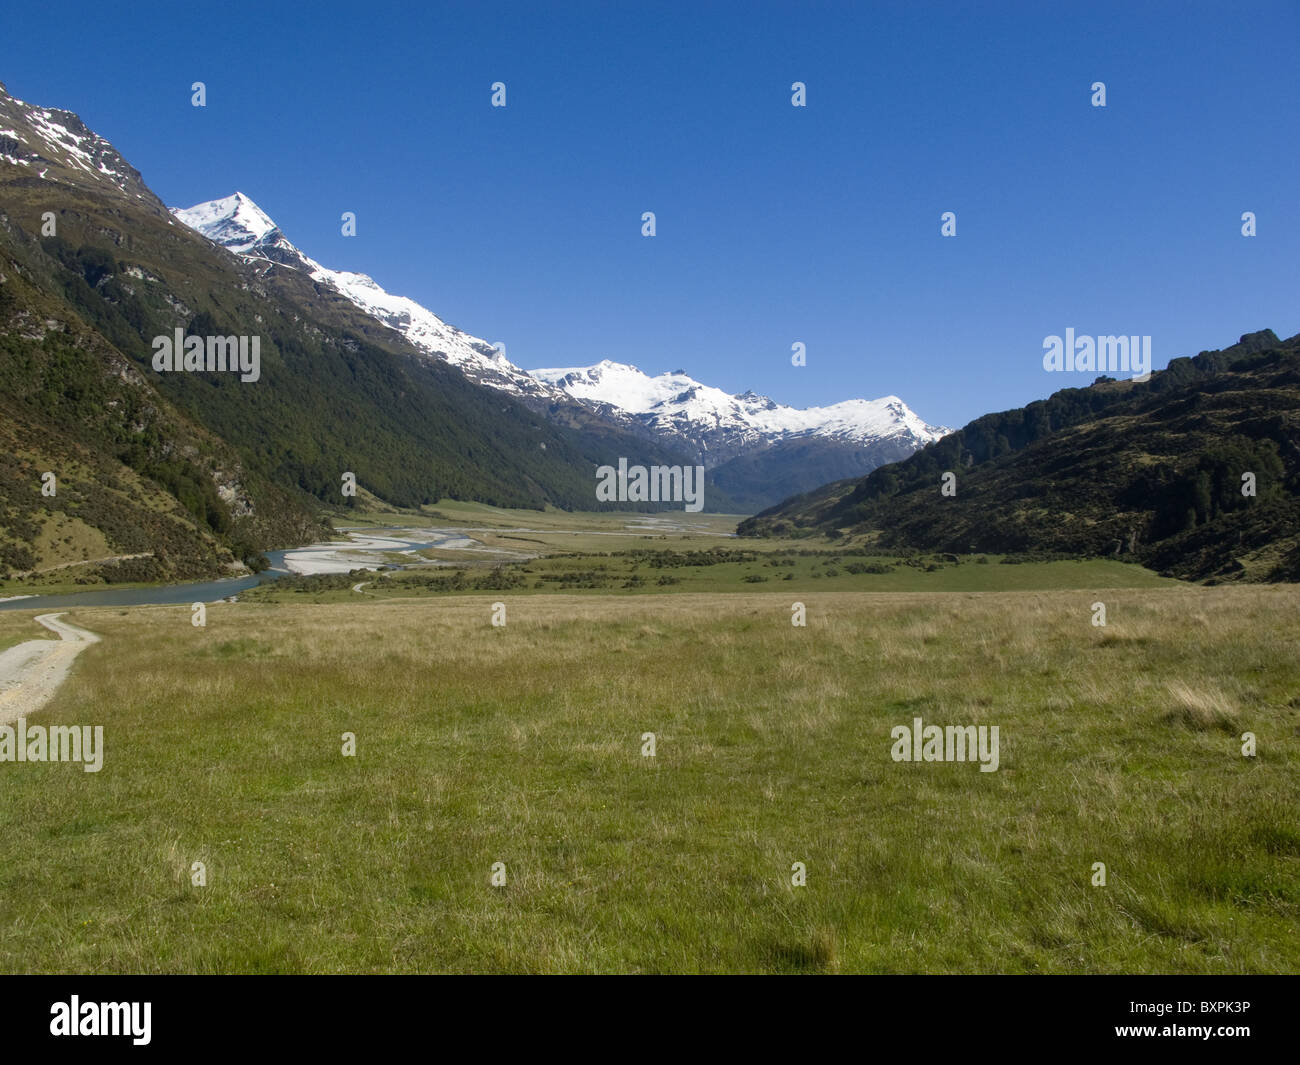 El piso de la rees Valle es mostrado como amplia y plana, con los picos nevados de los Alpes del Sur alto arriba Foto de stock